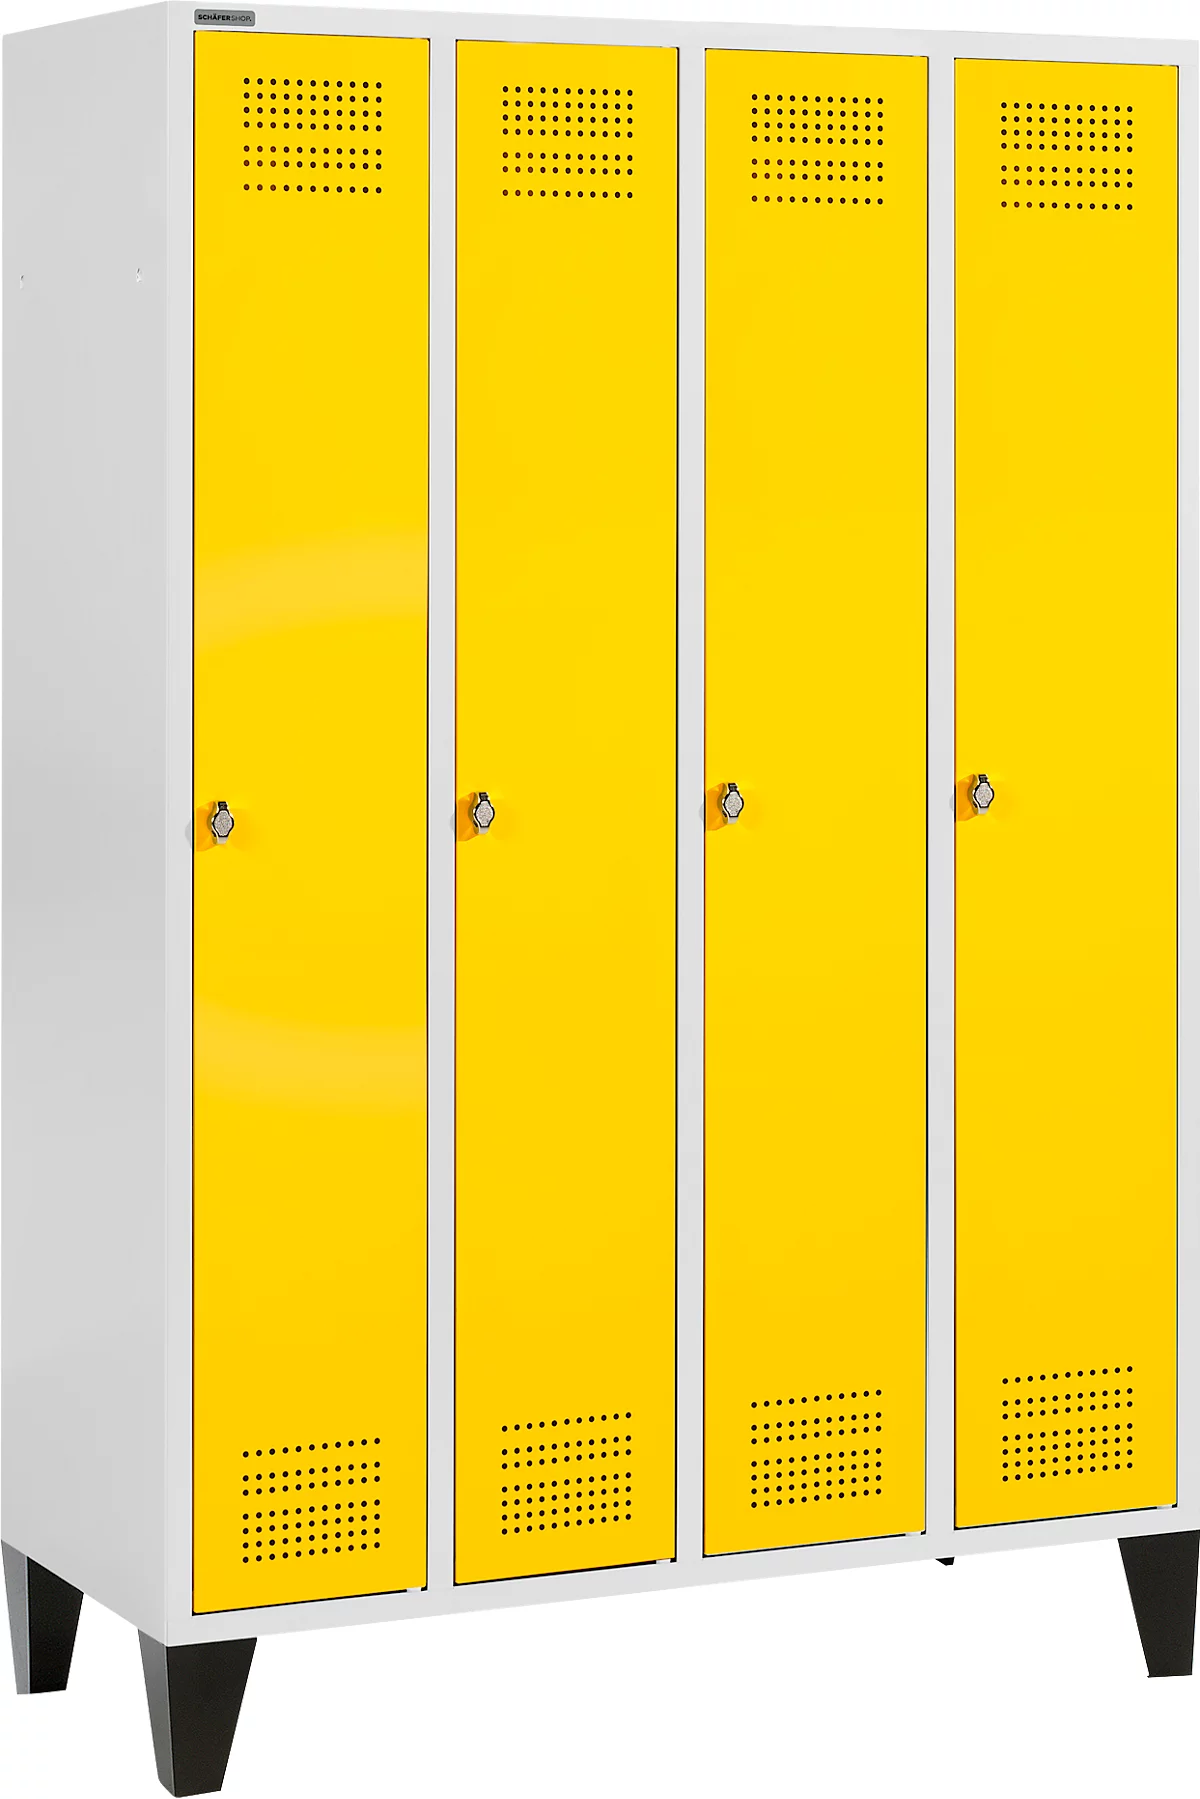 Schäfer Shop Genius Taquilla con patas, 4 compartimentos, cierre giratorio, gris luminoso/amarillo